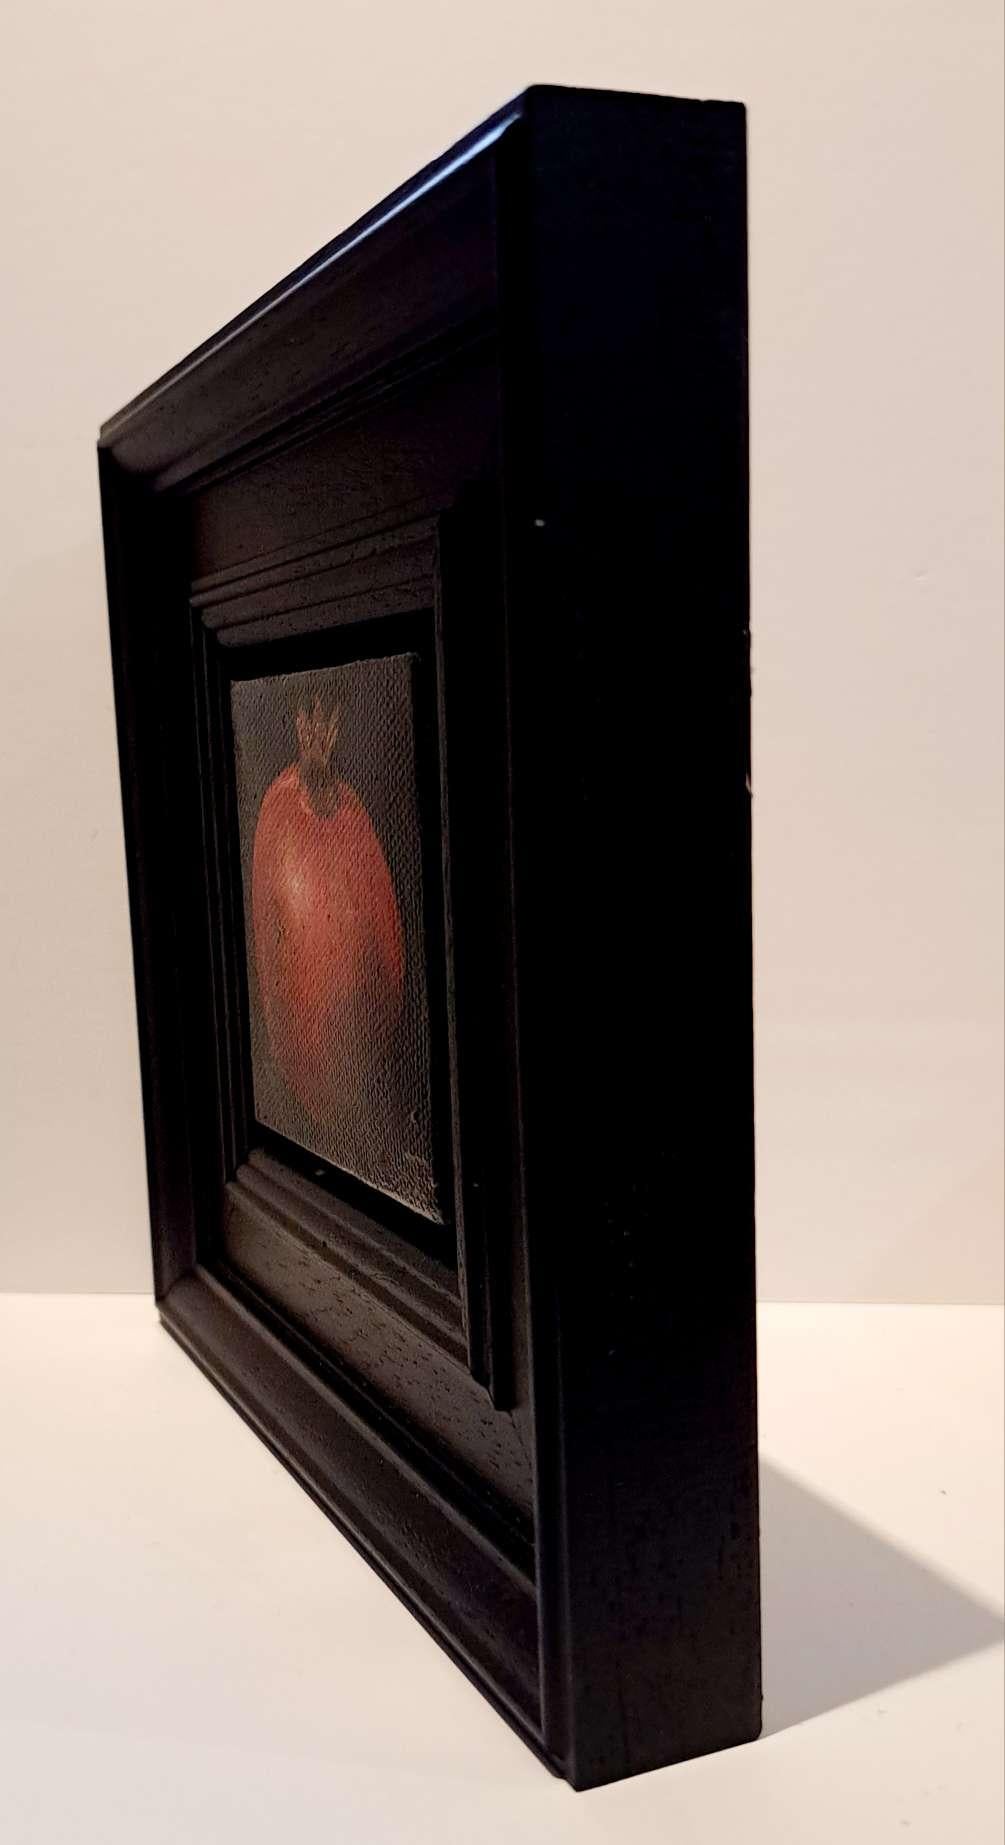 Pocket Ripe Red Pomegranate est une peinture à l'huile originale réalisée par Dani Humberstone dans le cadre de sa série Pocket Painting, qui propose des peintures à l'huile réalistes à petite échelle, avec un clin d'œil aux natures mortes baroques.